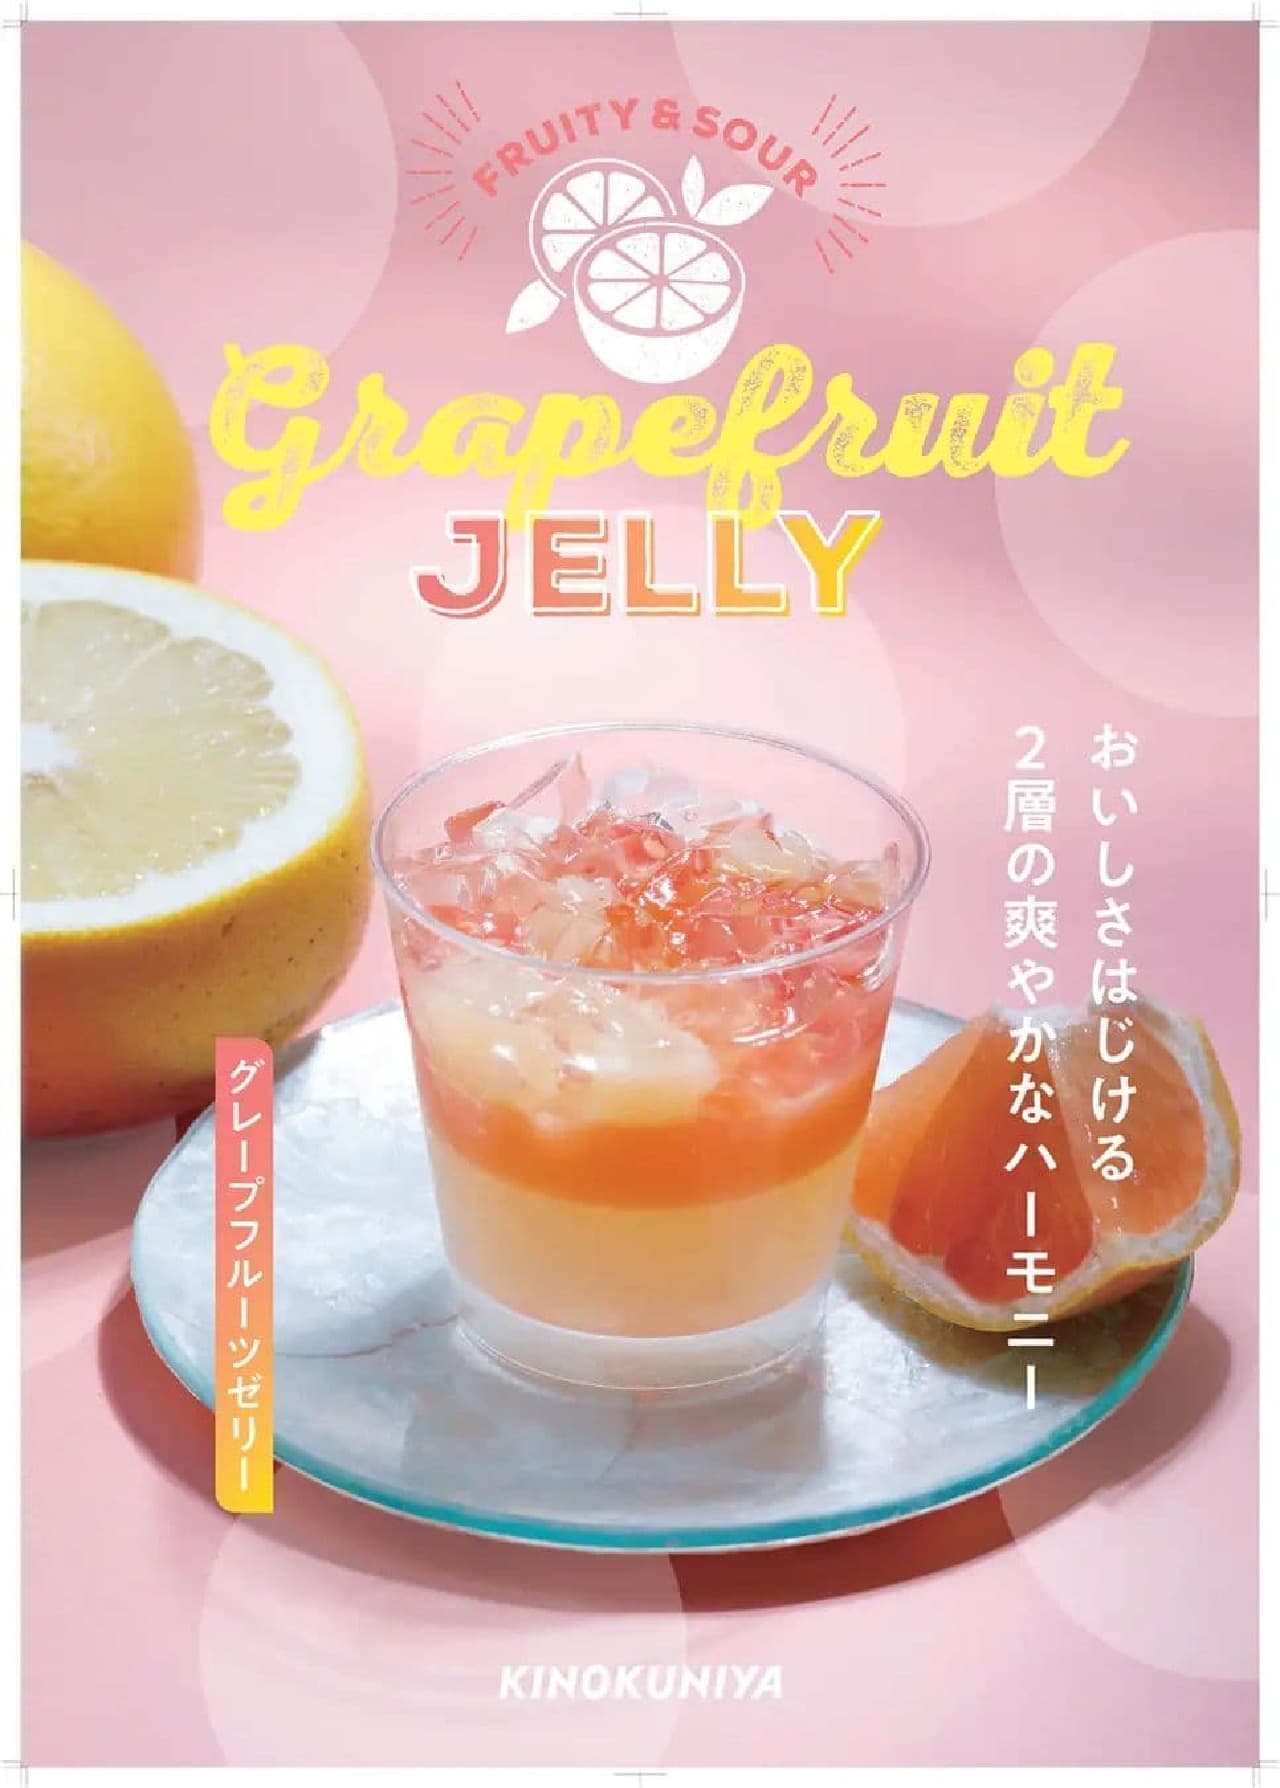 KINOKUNIYA "Grapefruit Jelly